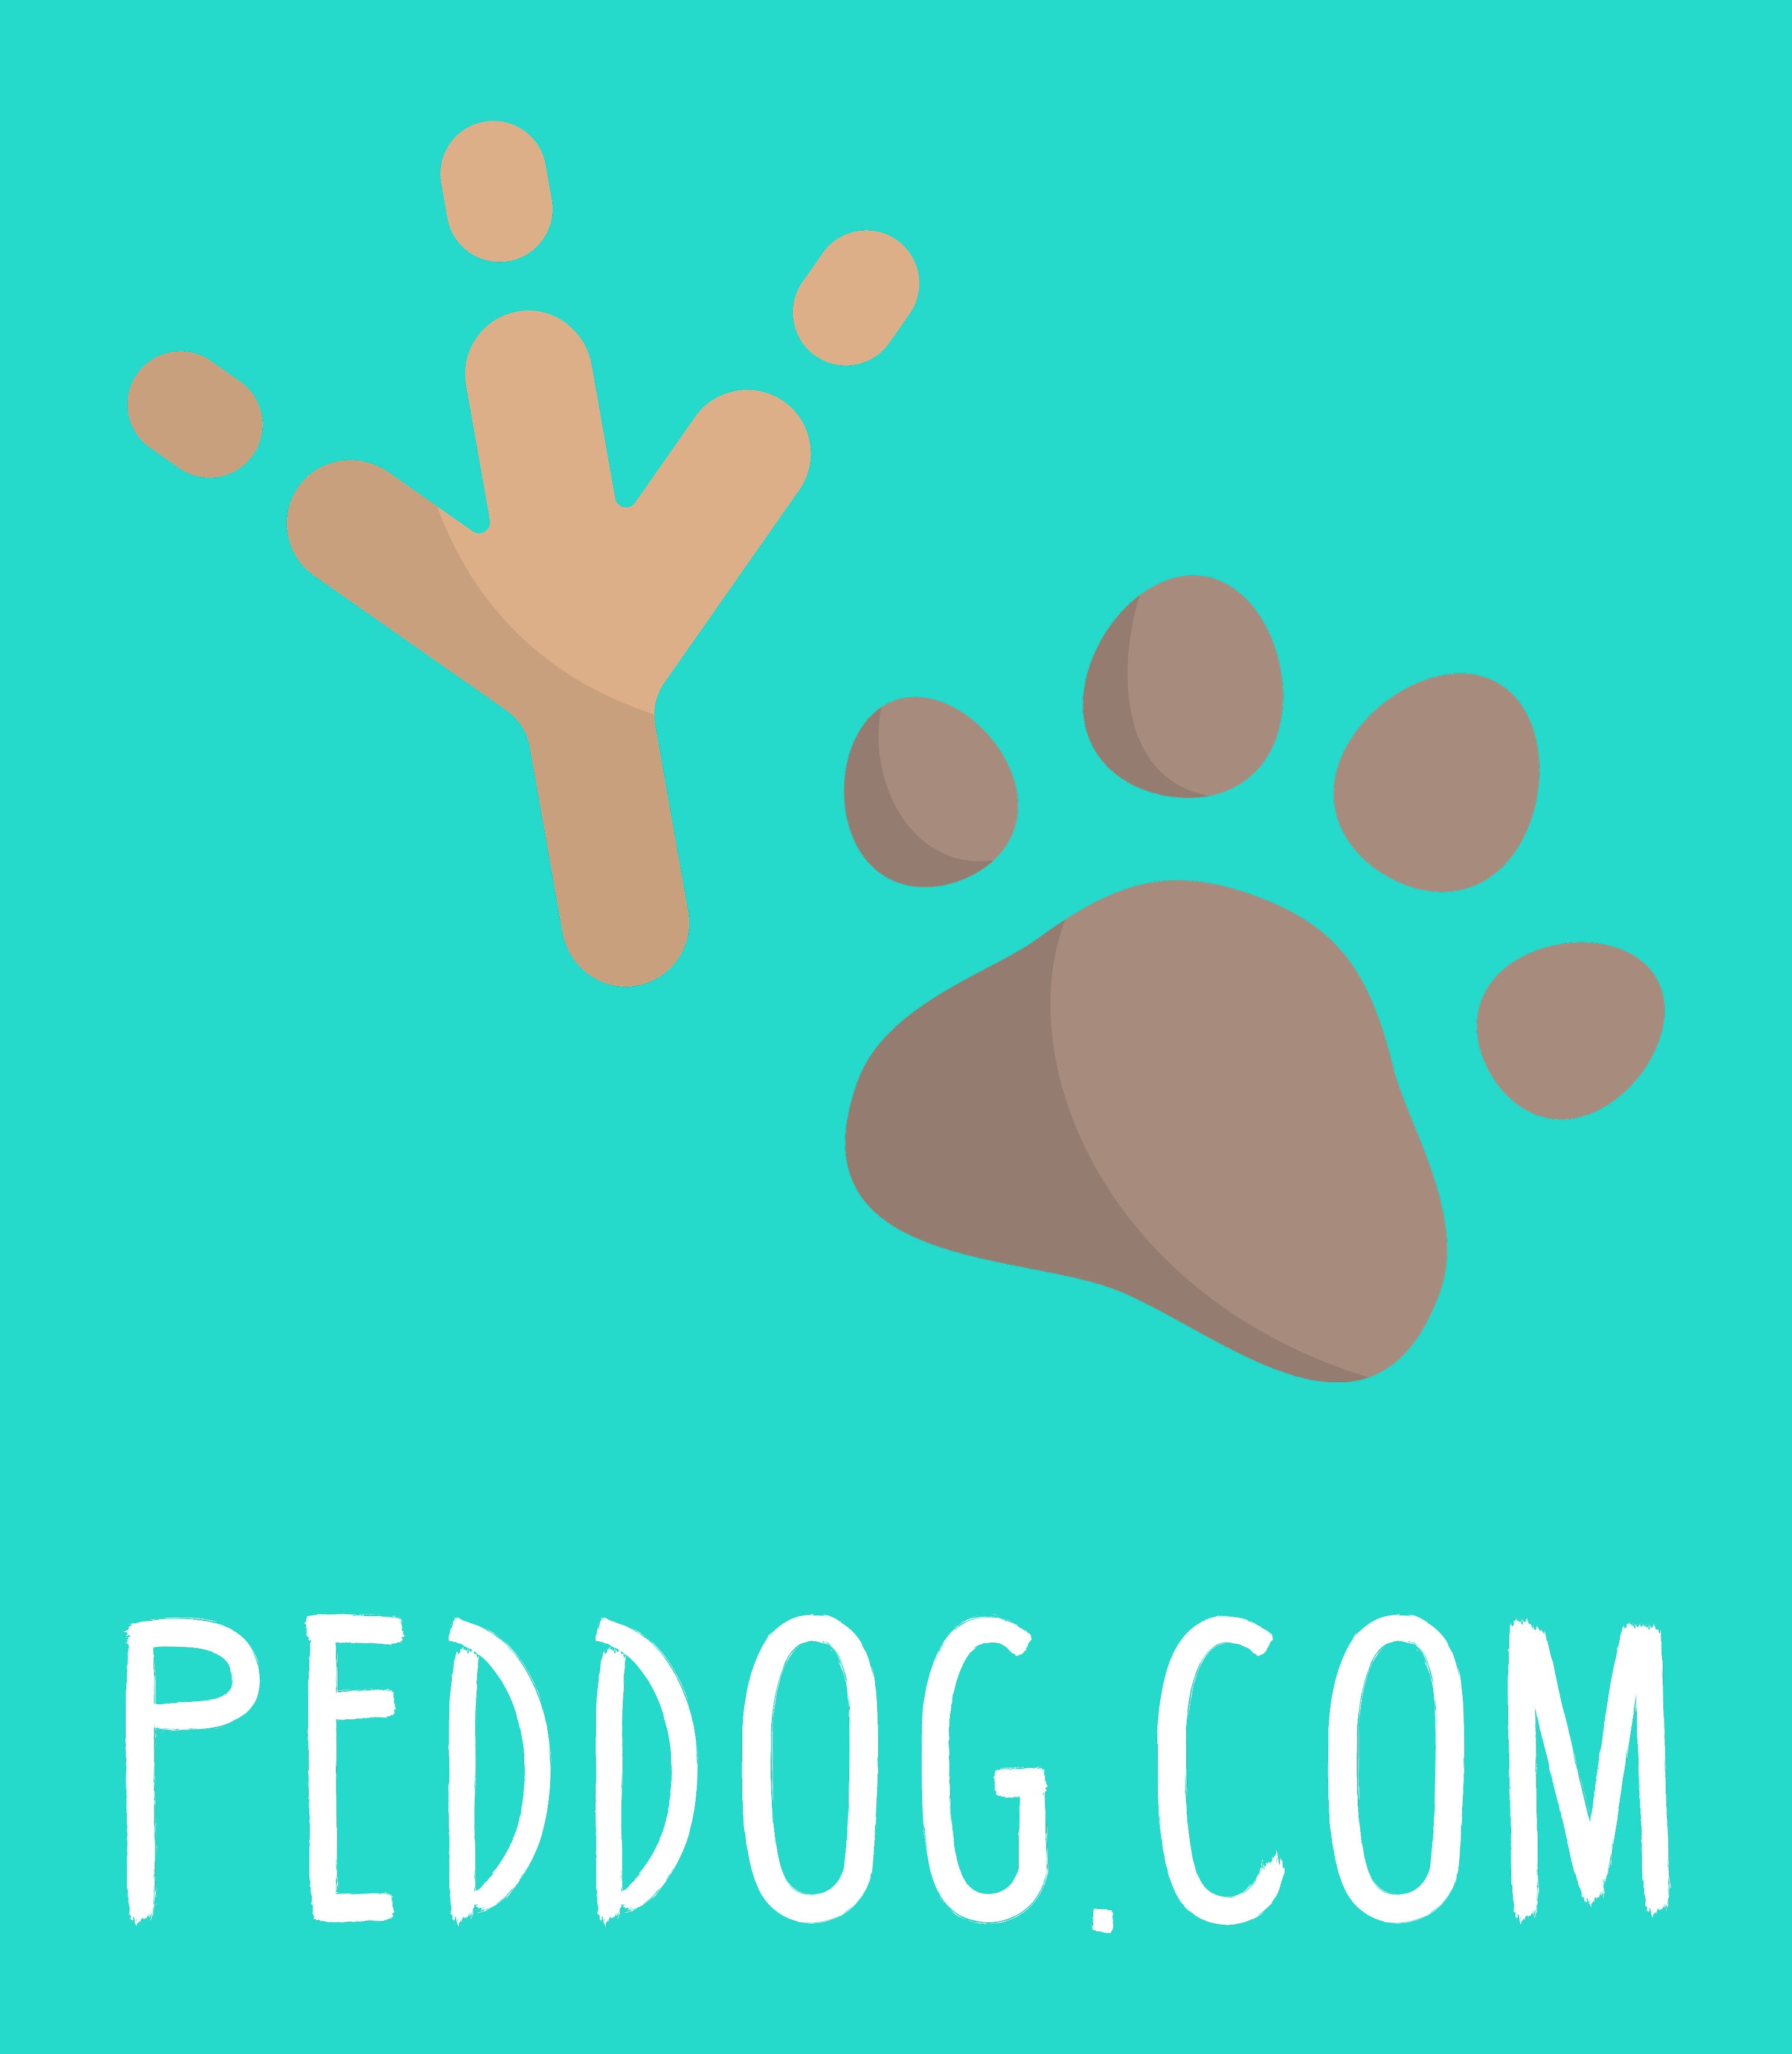 PEDDOG.COM